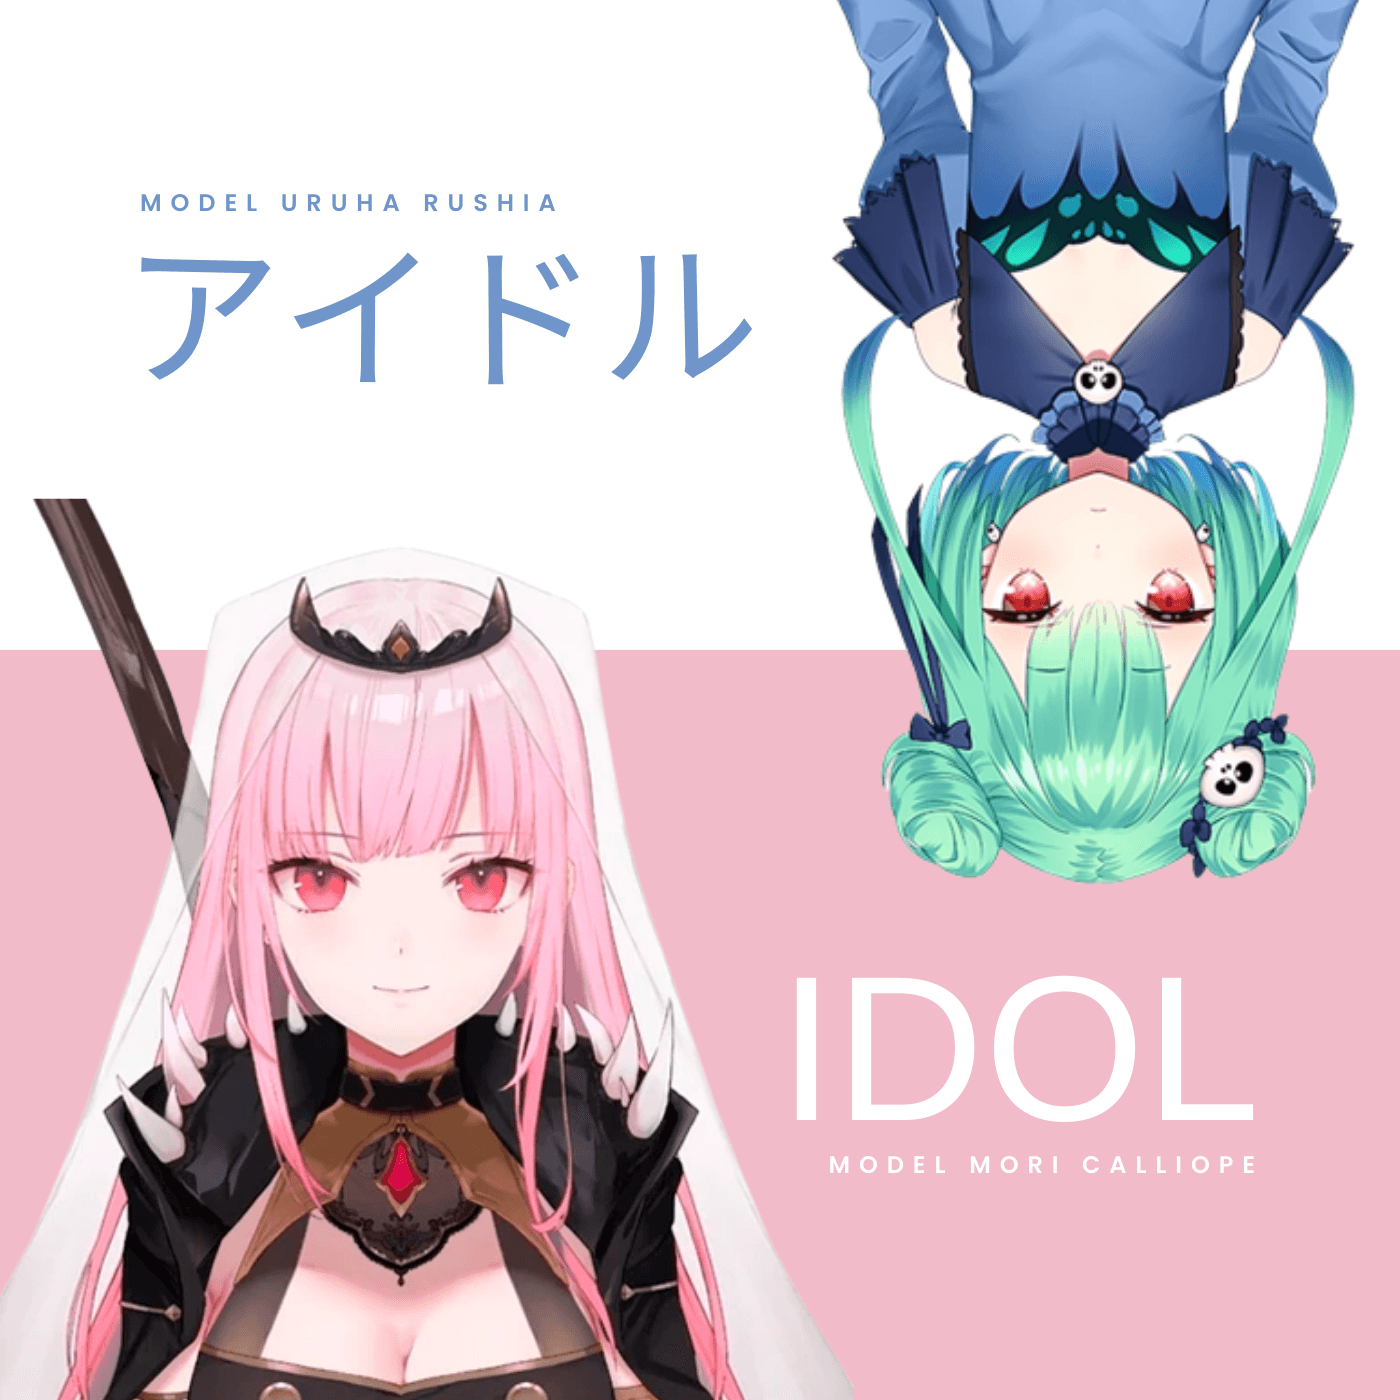 「アイドル」Idol - Uruha Rushia x Mori Calliope (AI Cover)